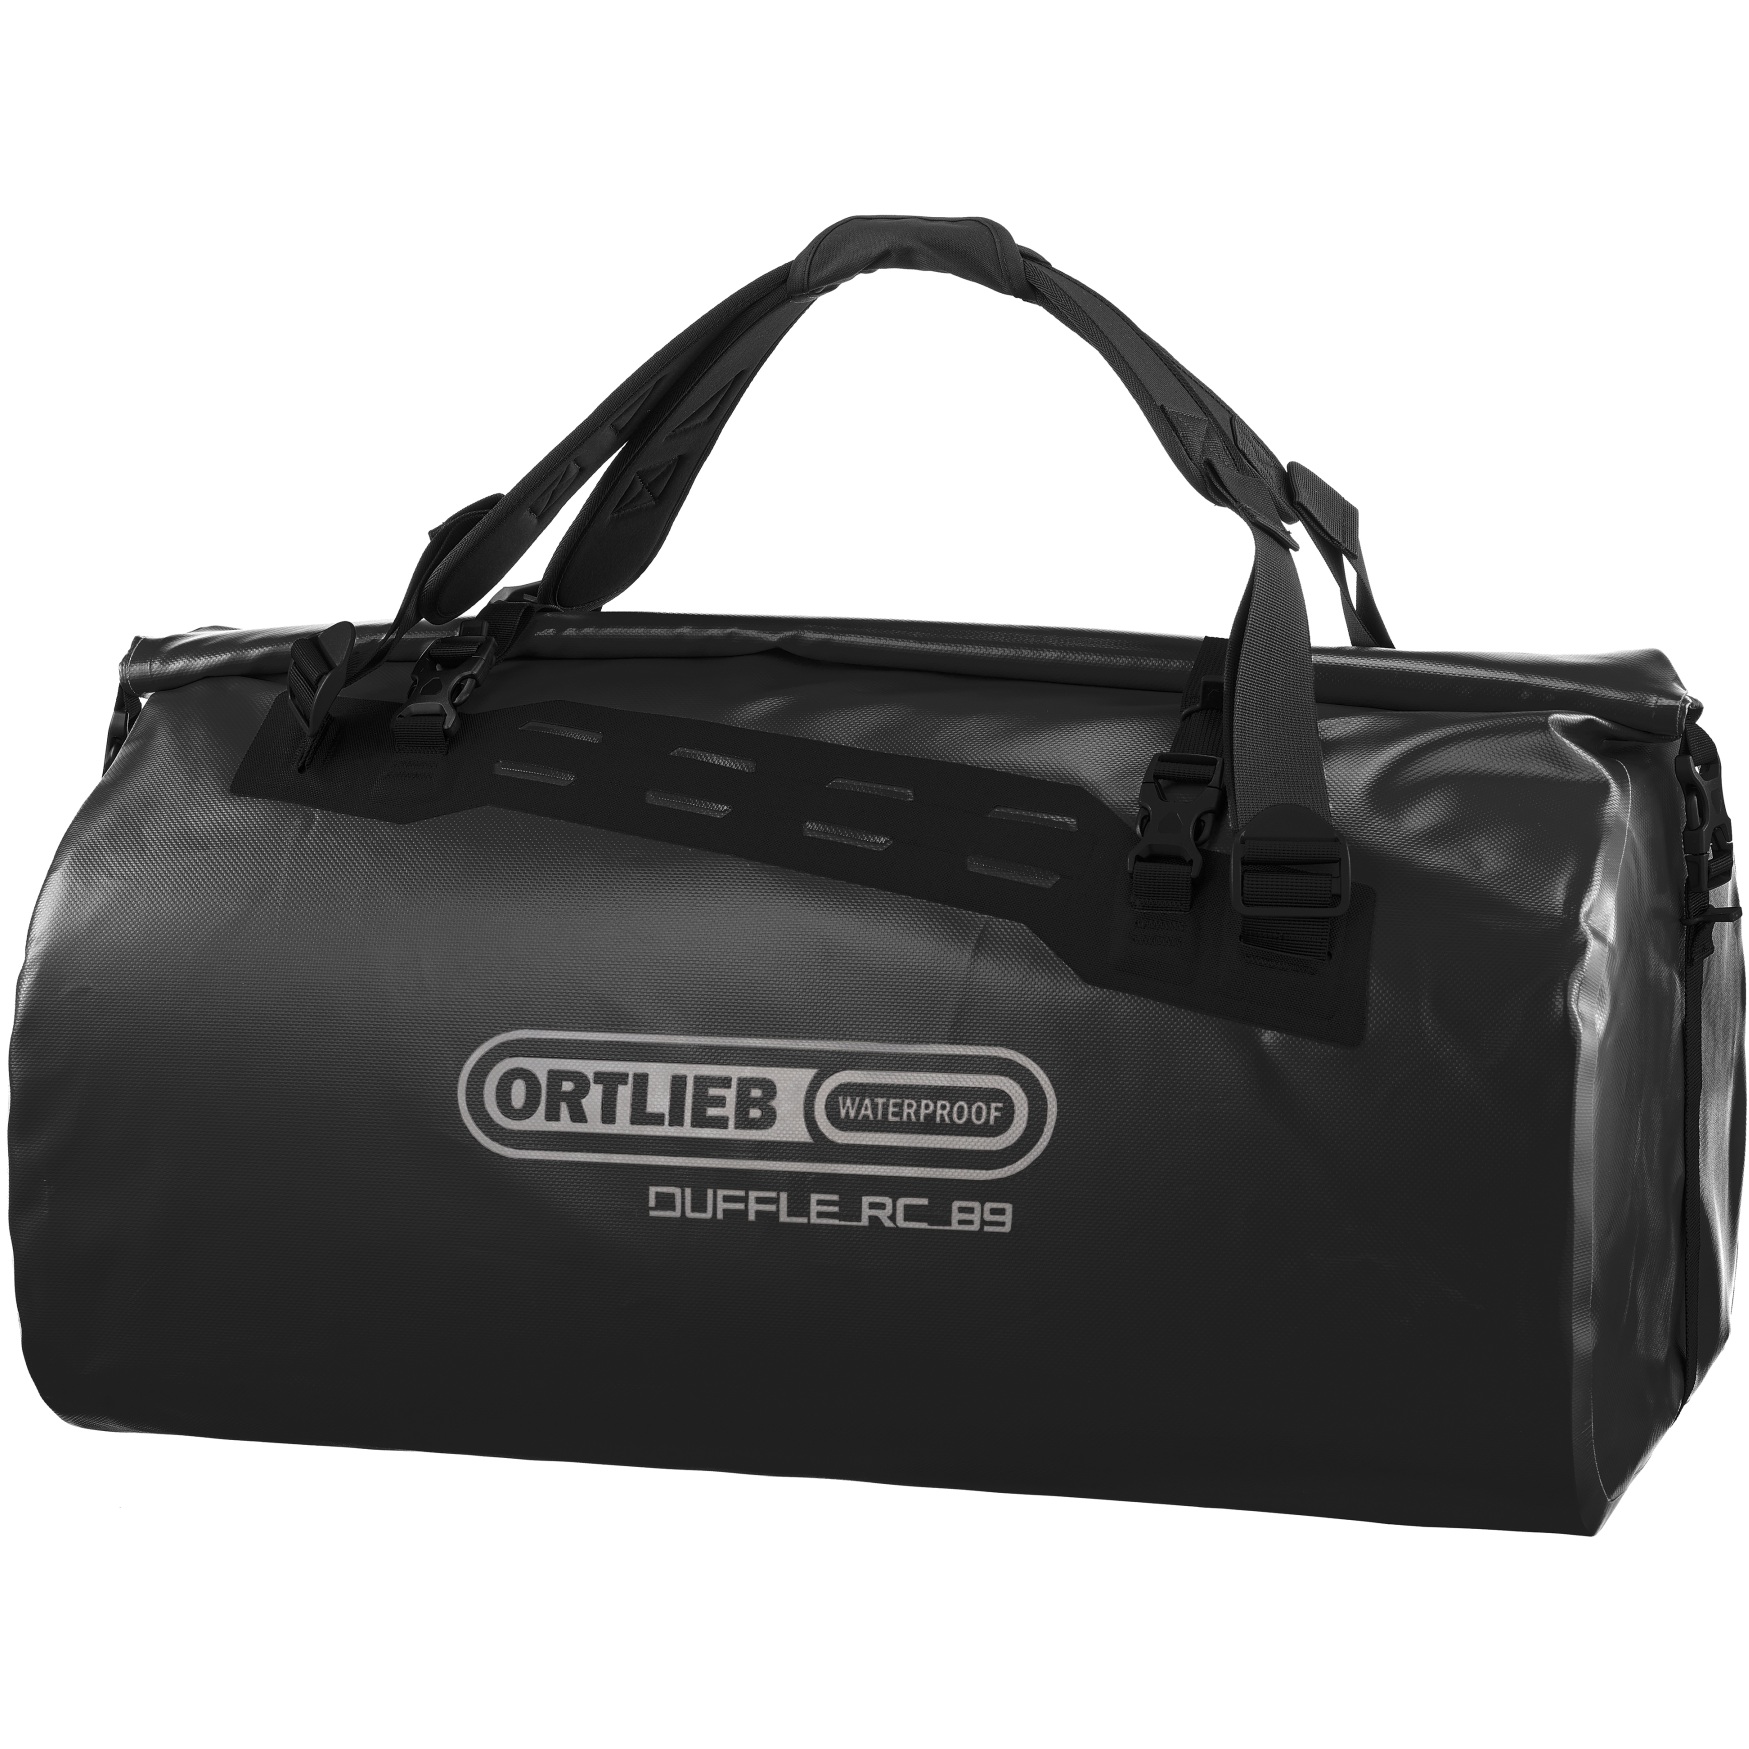 Produktbild von ORTLIEB Duffle RC 89L Reisetasche - schwarz